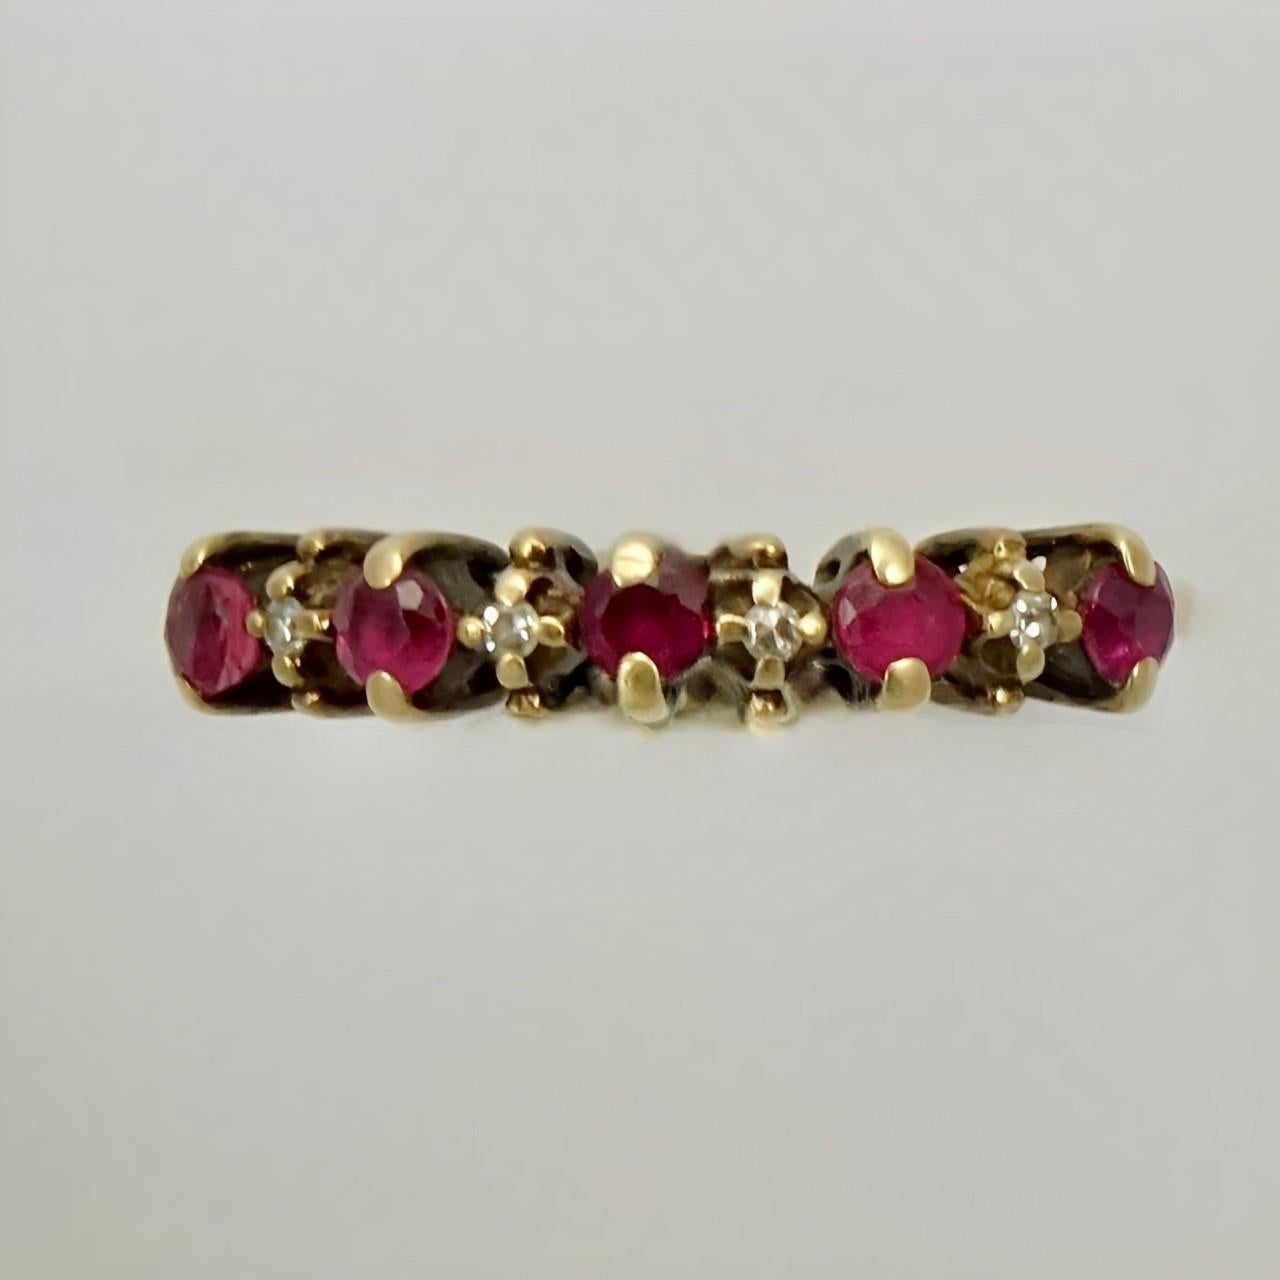 Schöner Ring aus 10 Karat Gold, besetzt mit einer Reihe von Rubinen und Diamanten. Es gibt fünf Rubine und vier Diamanten. Dies ist ein kleiner Ring, Größe UK F / US 3, und Innendurchmesser 1,5 cm / .59 inch. Die Höhe der Einstellung beträgt 3,5 mm